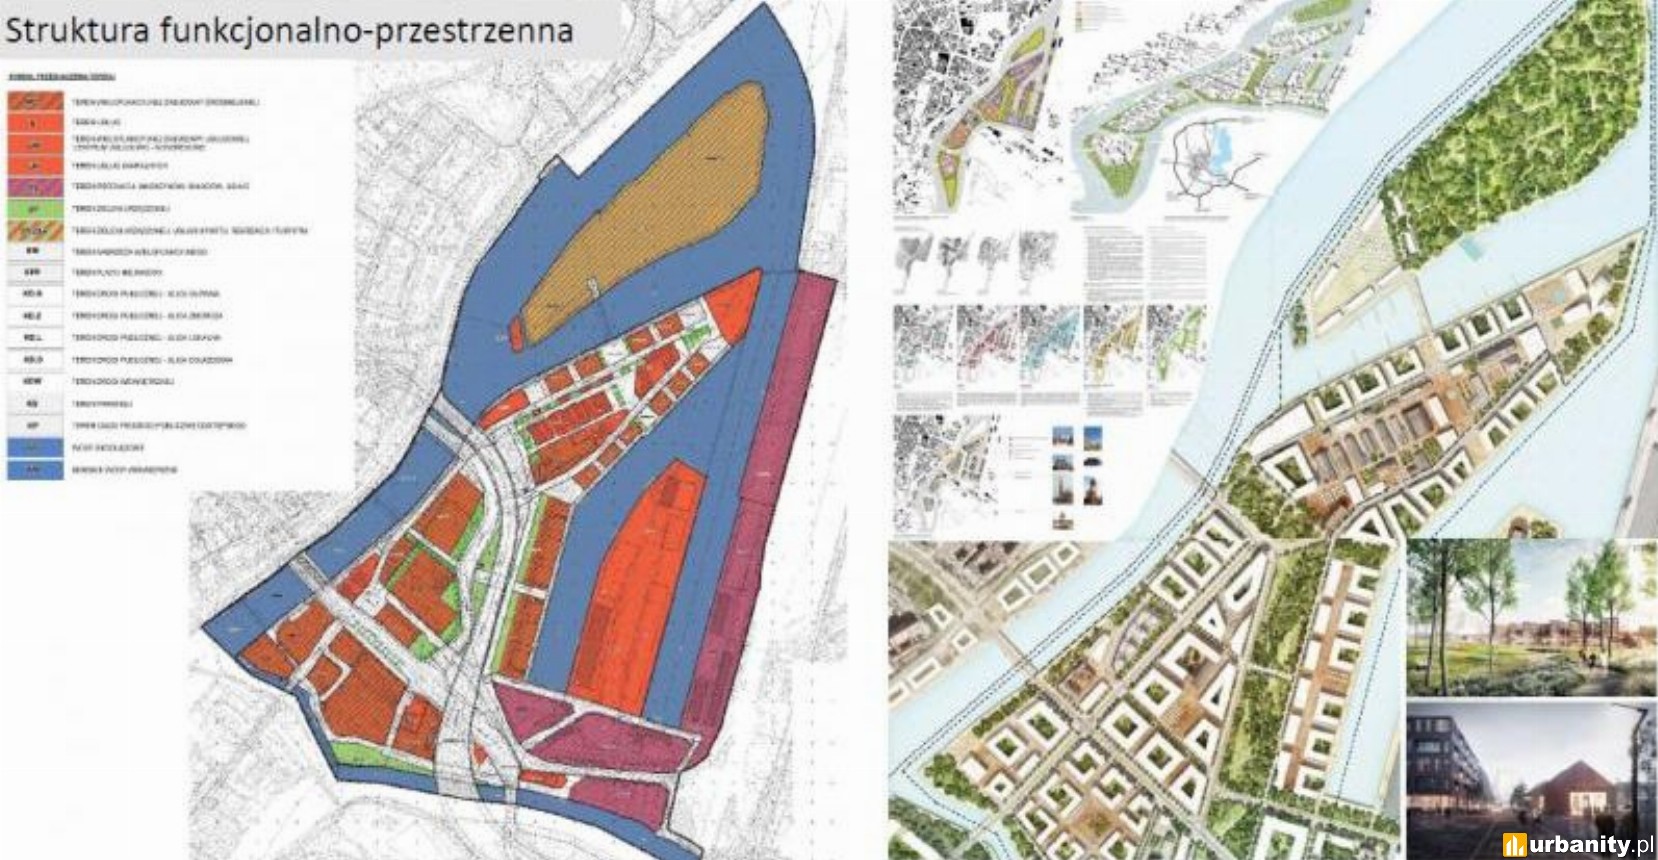 Łasztownia na nowo - nowy plan zagospodarowania przestrzennego dla ścisłego centrum Szczecina